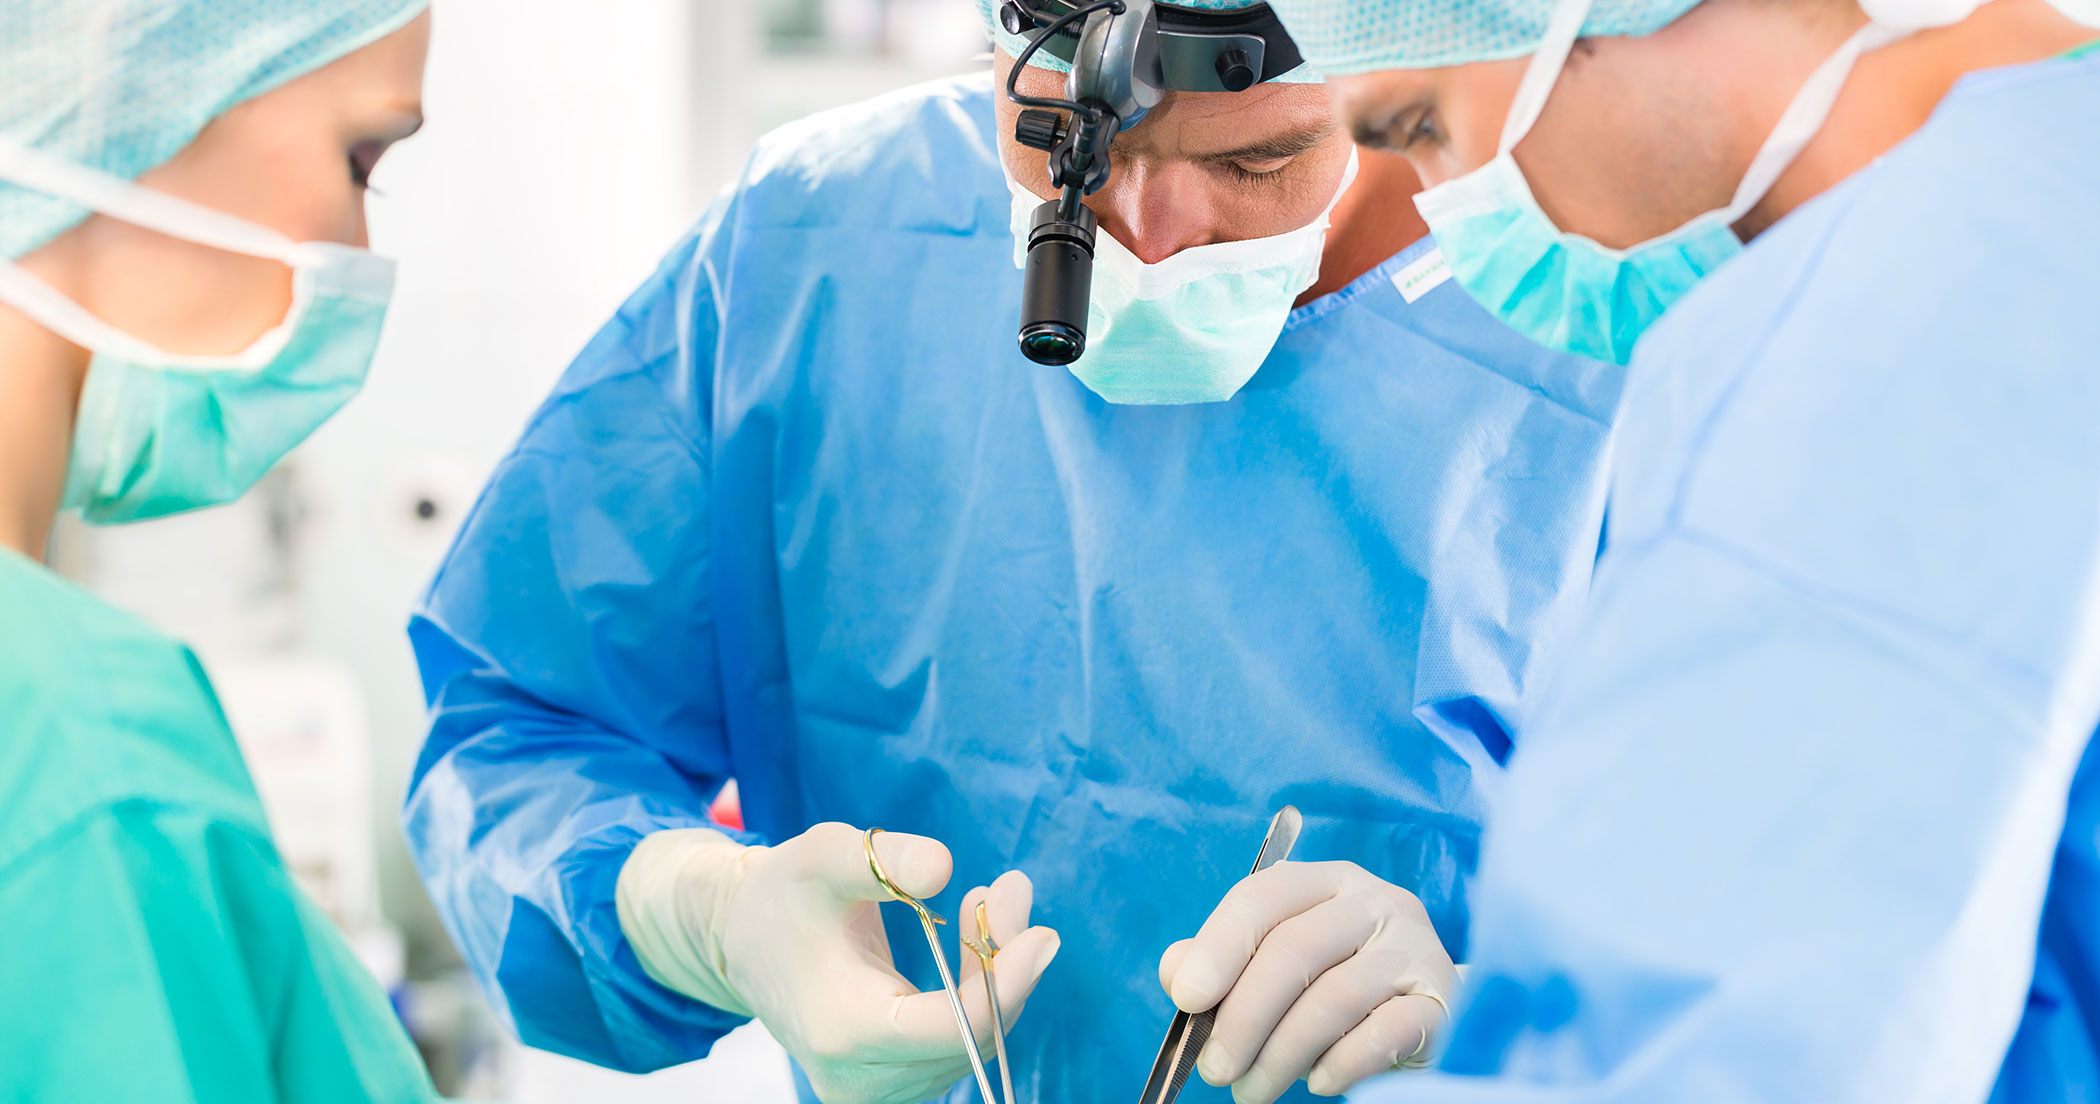 Otorhinolaryngology surgeries